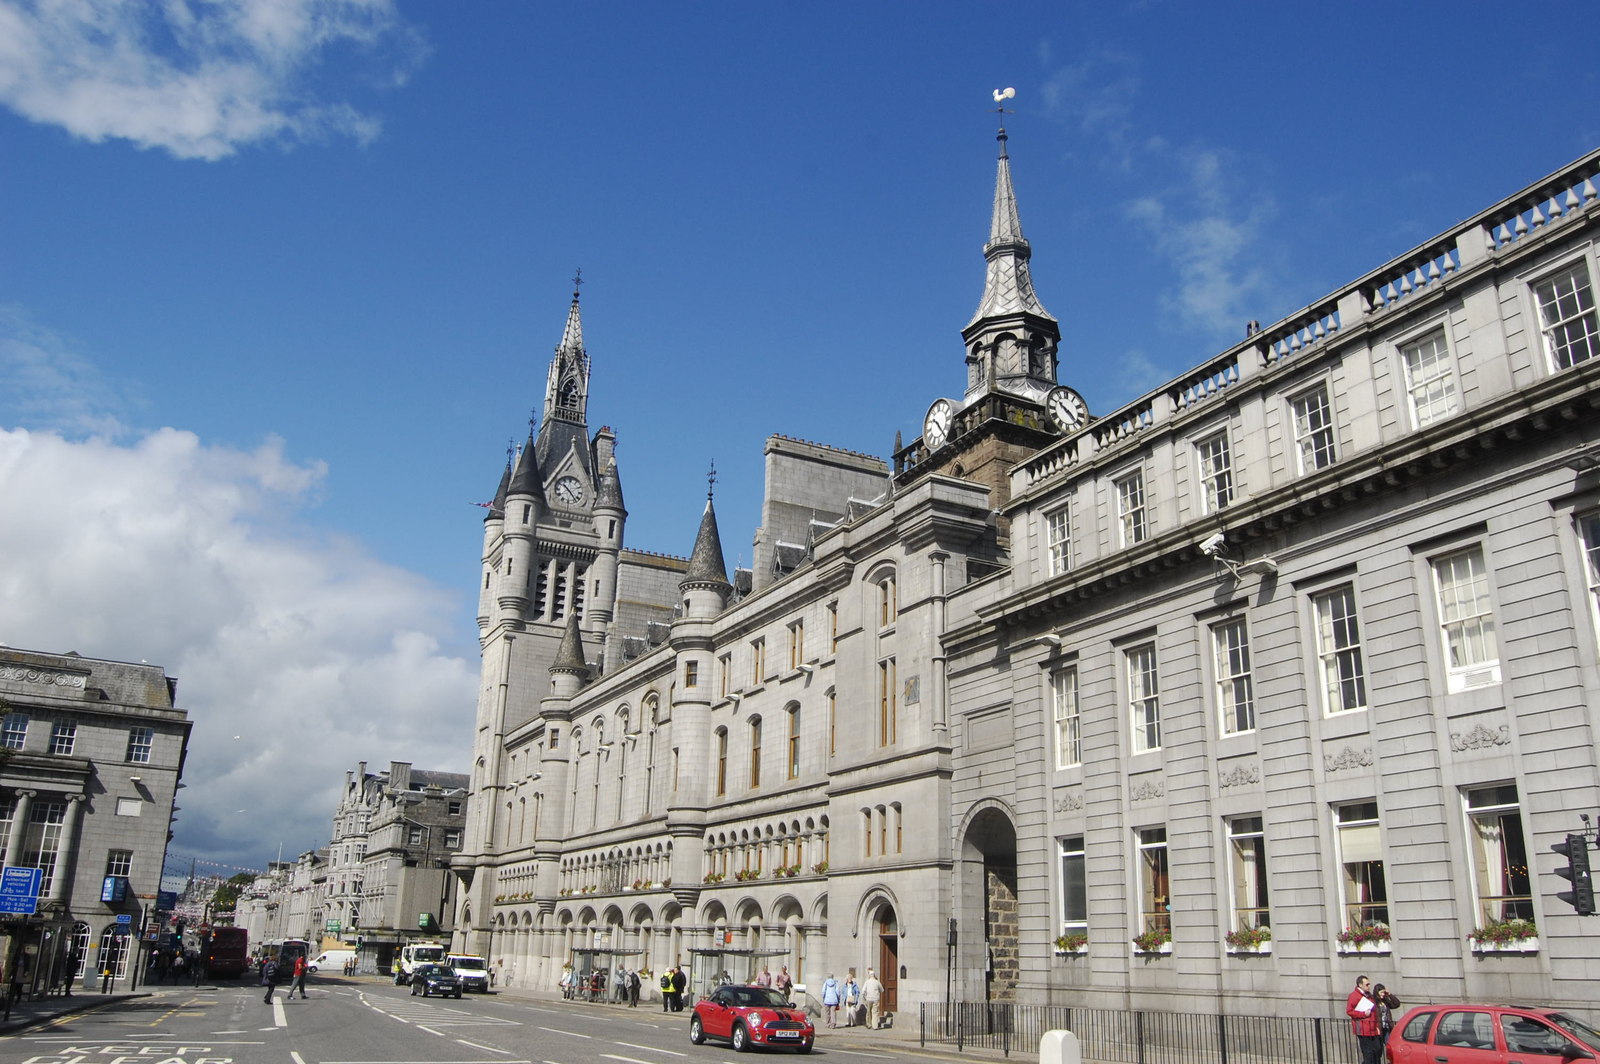 Aberdeen city hall